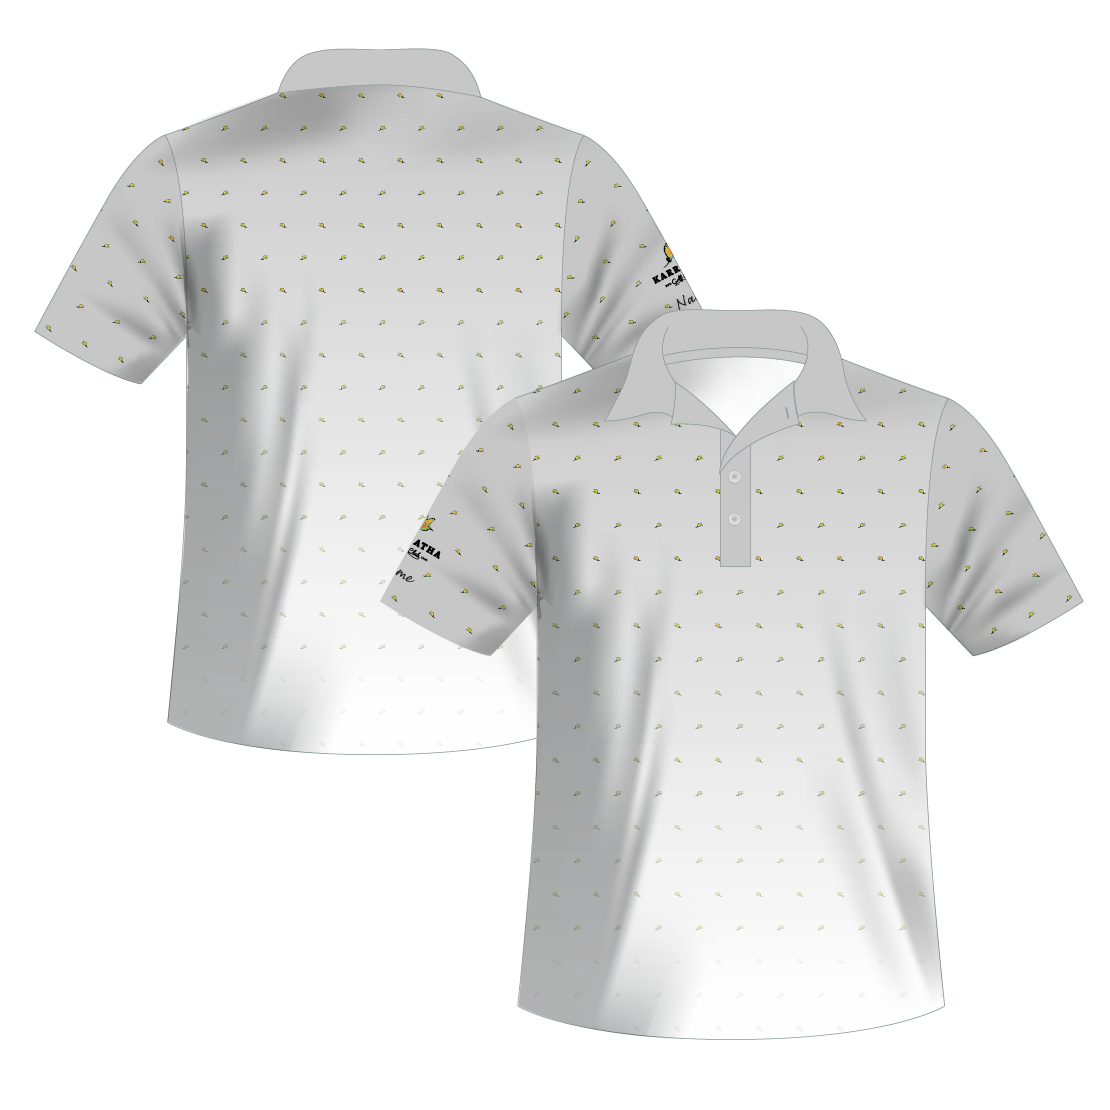 S/S Polo Shirt